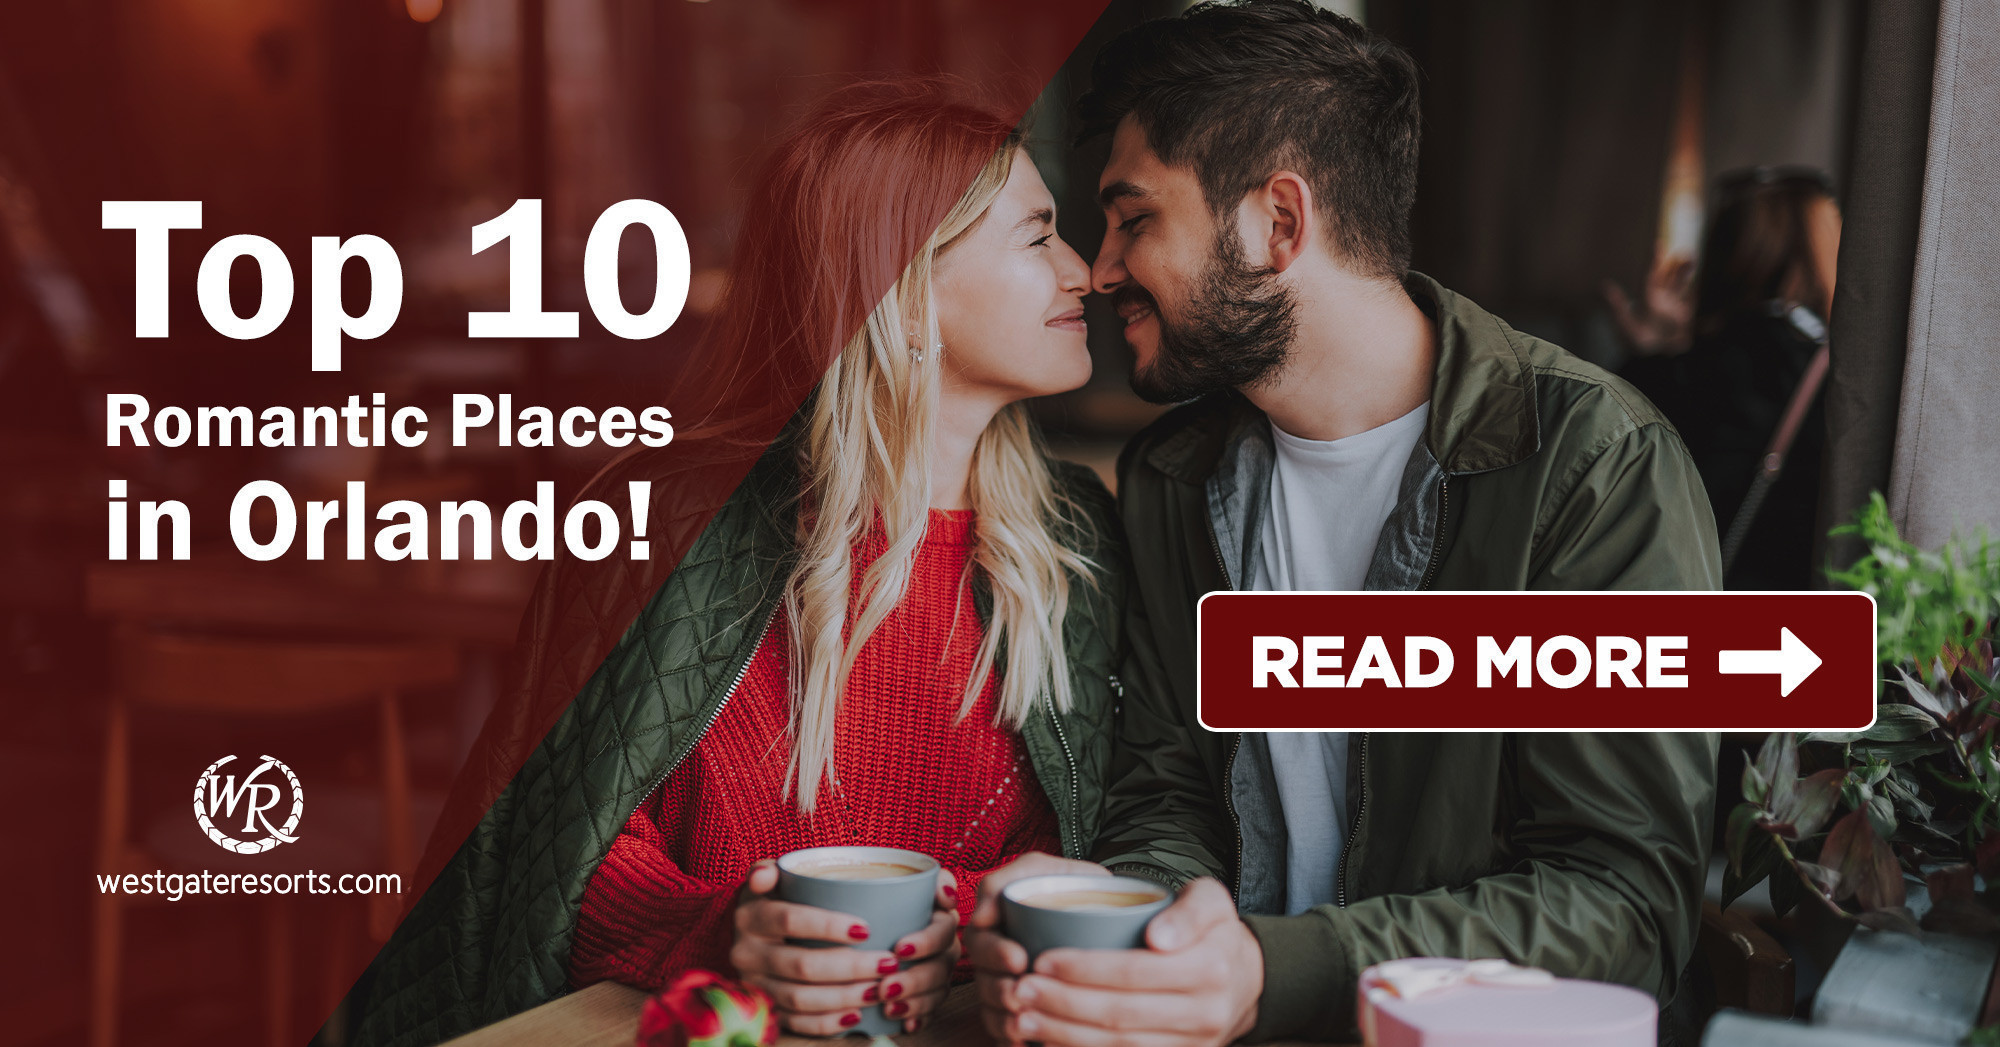 ¡Los 10 mejores lugares románticos en Orlando!